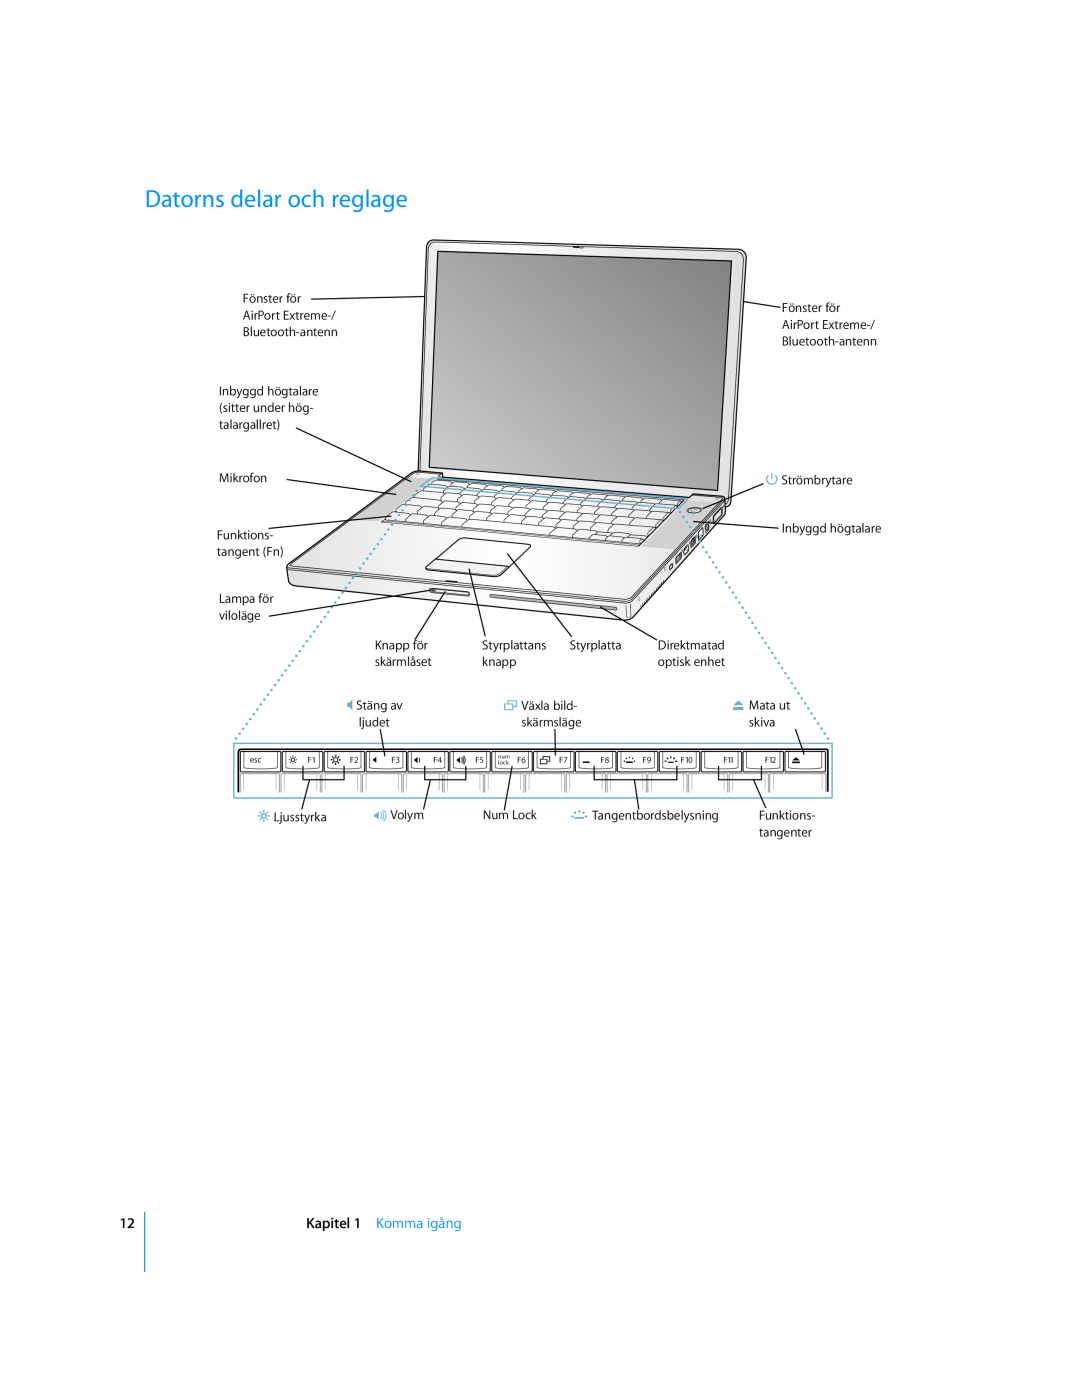 Apple G4 15-TUM manual Datorns delar och reglage, Kapitel 1 Komma igång, Funktions 